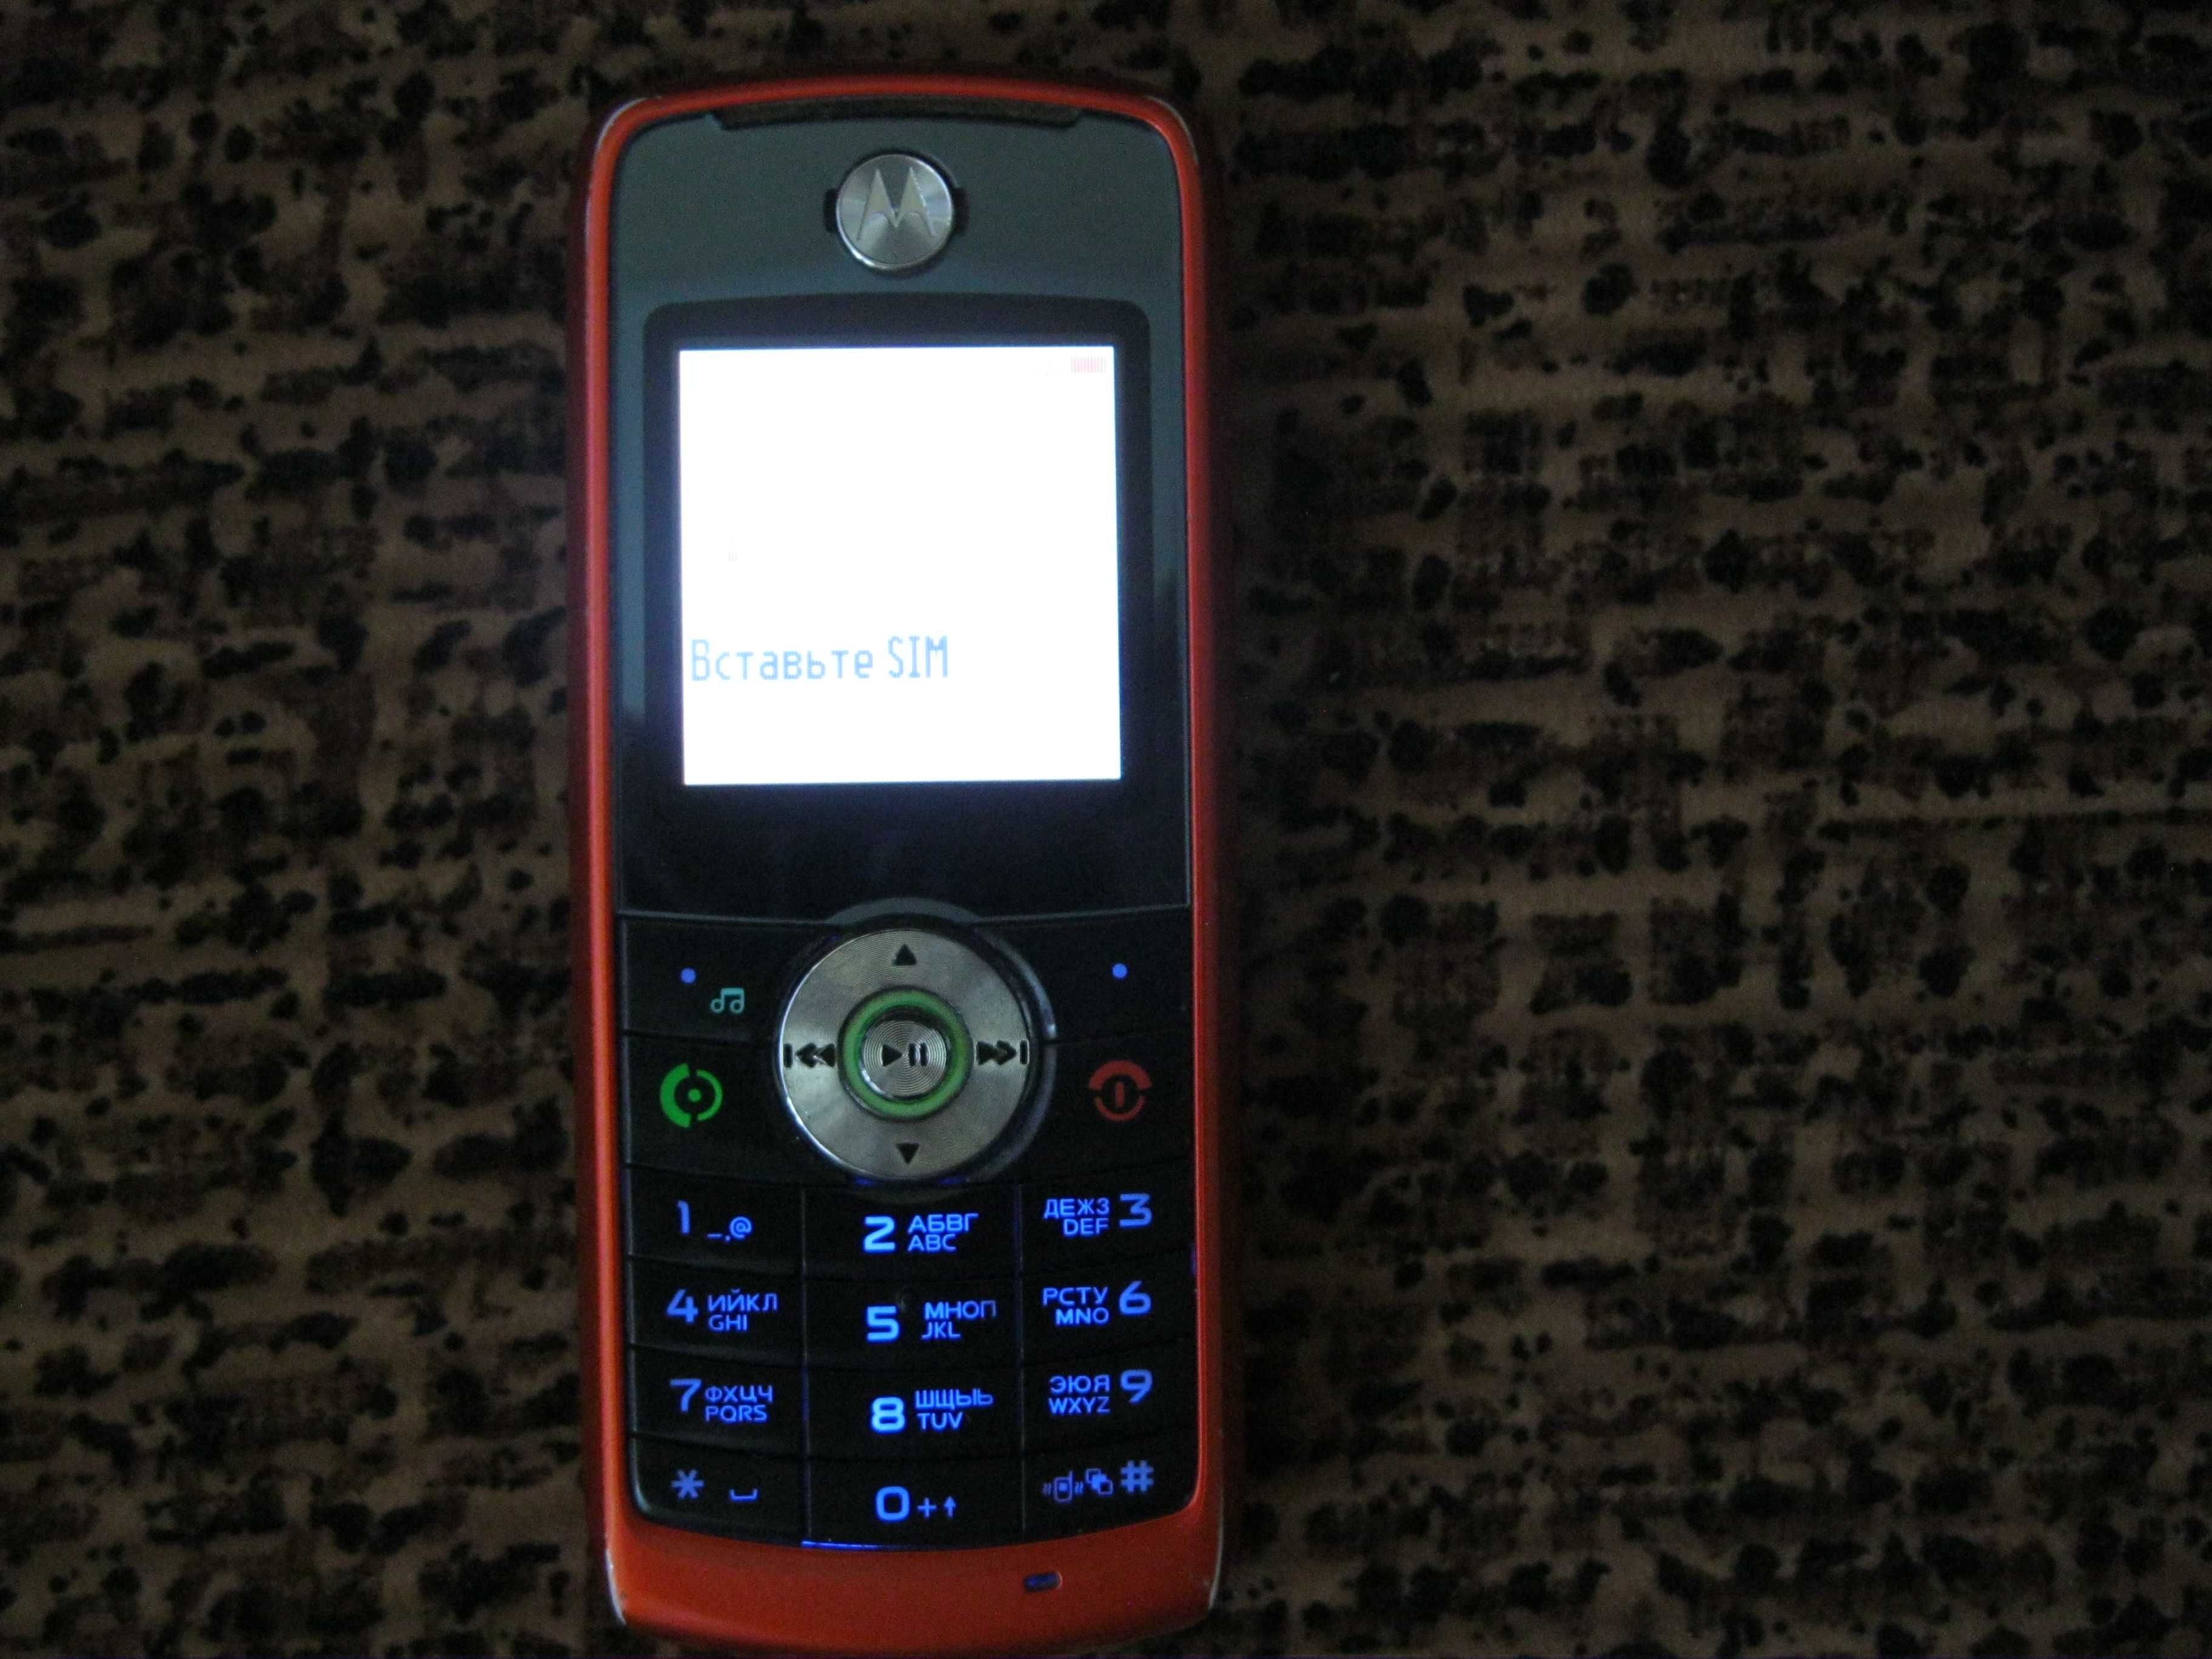 Коммуникатор ASUS P535 и кнопочные телефоны MOTOROLA, SAMSUNG , LG